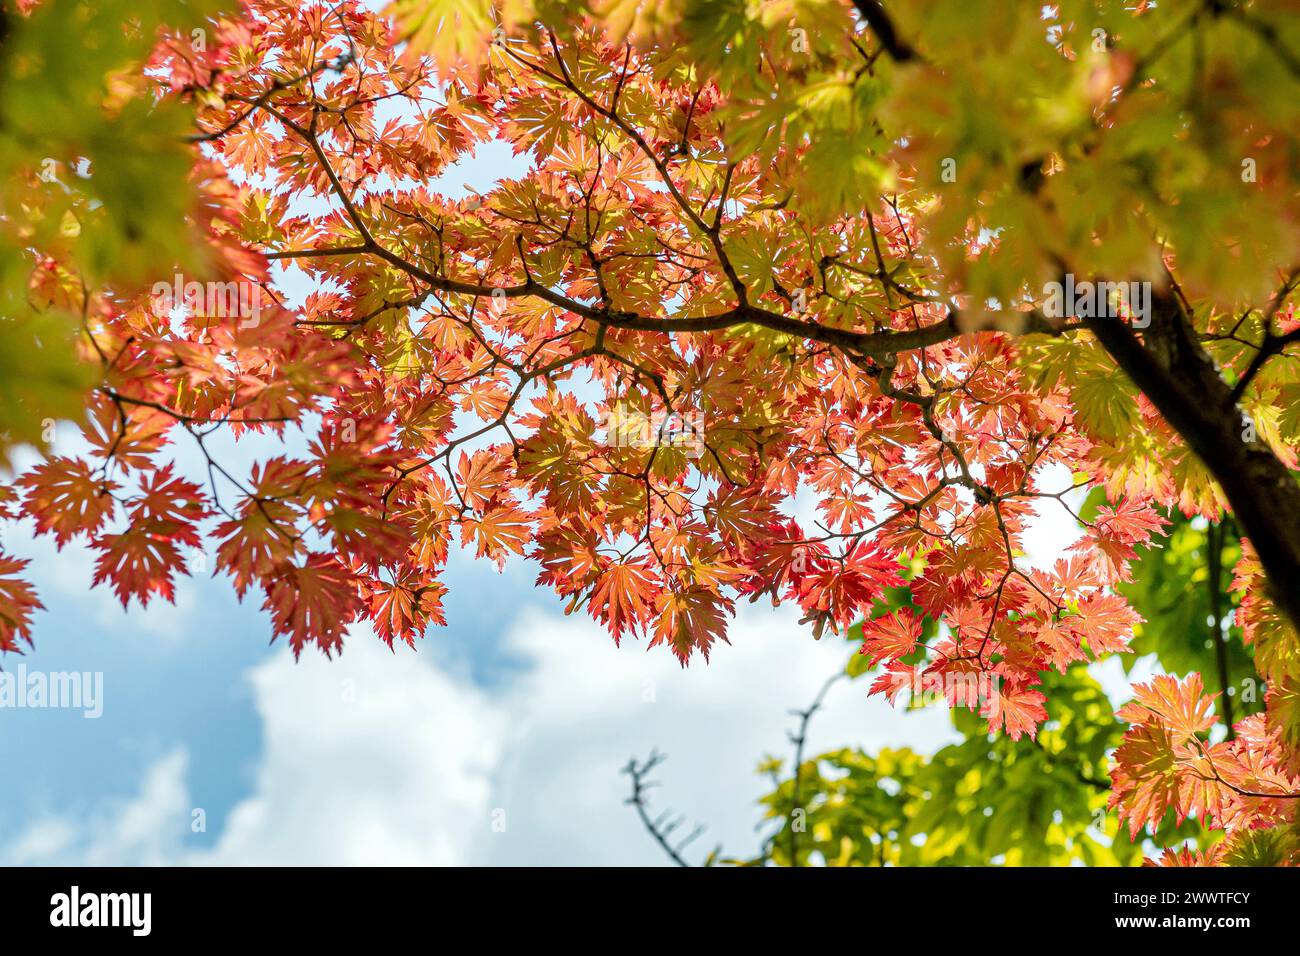 Japanese maple (Acer japonicum 'Aconitifolium', Acer japonicum Aconitifolium), Leaves in the fall of the cultivar Aconitifolium Stock Photo